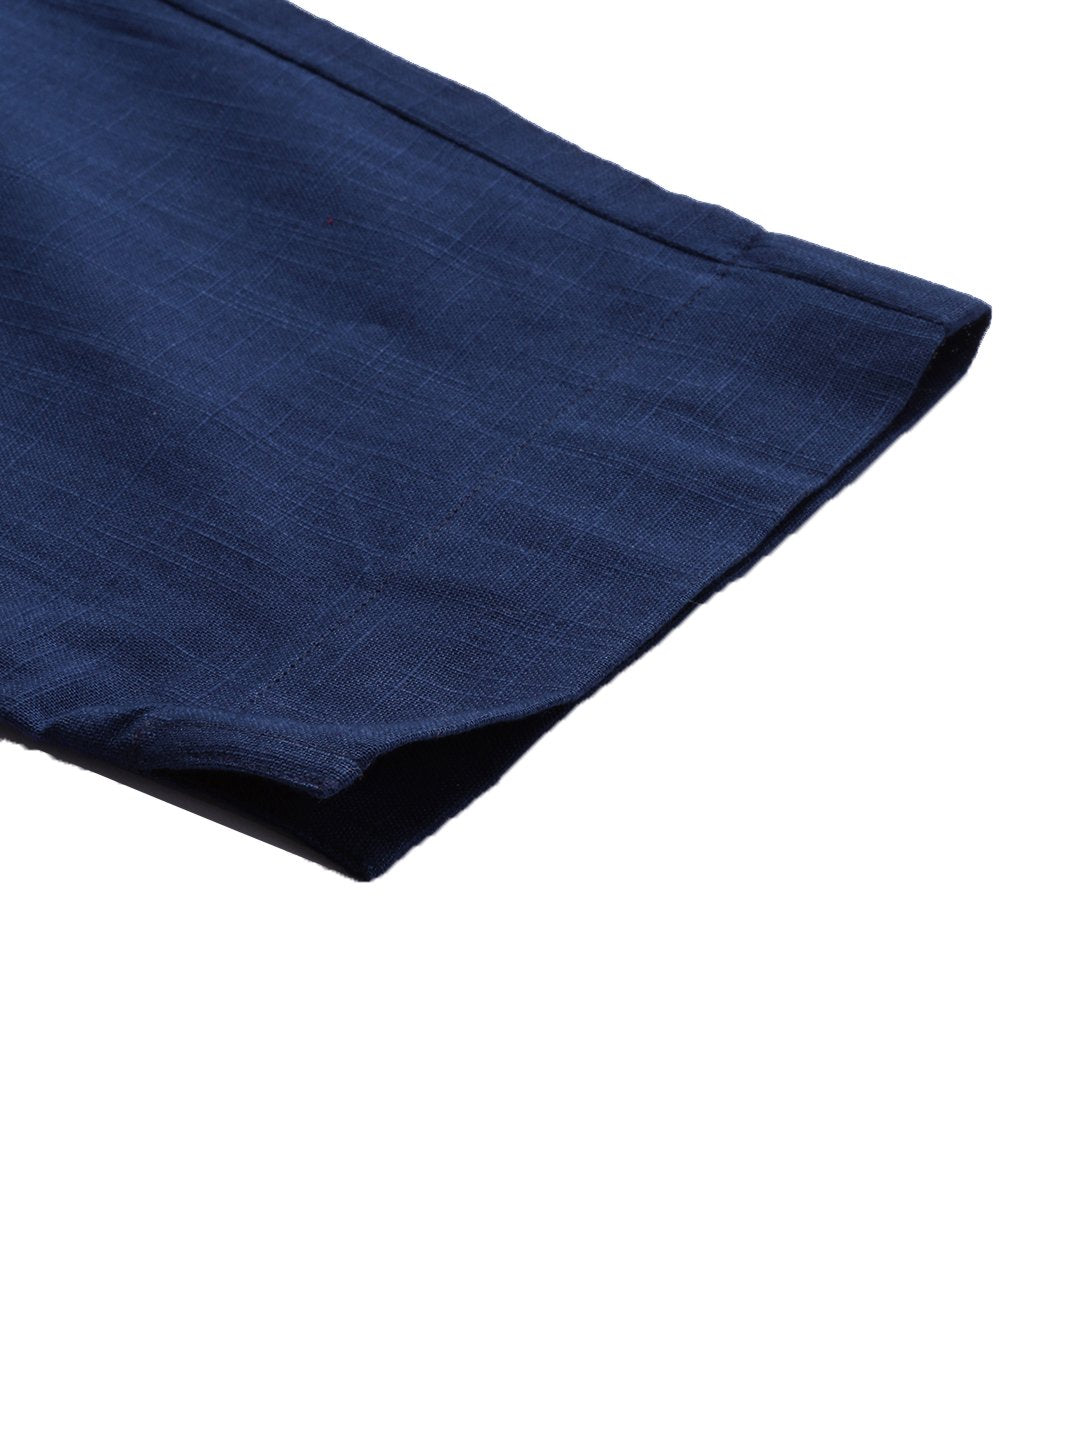 Women's Blue Cotton Trouser - Noz2Toz